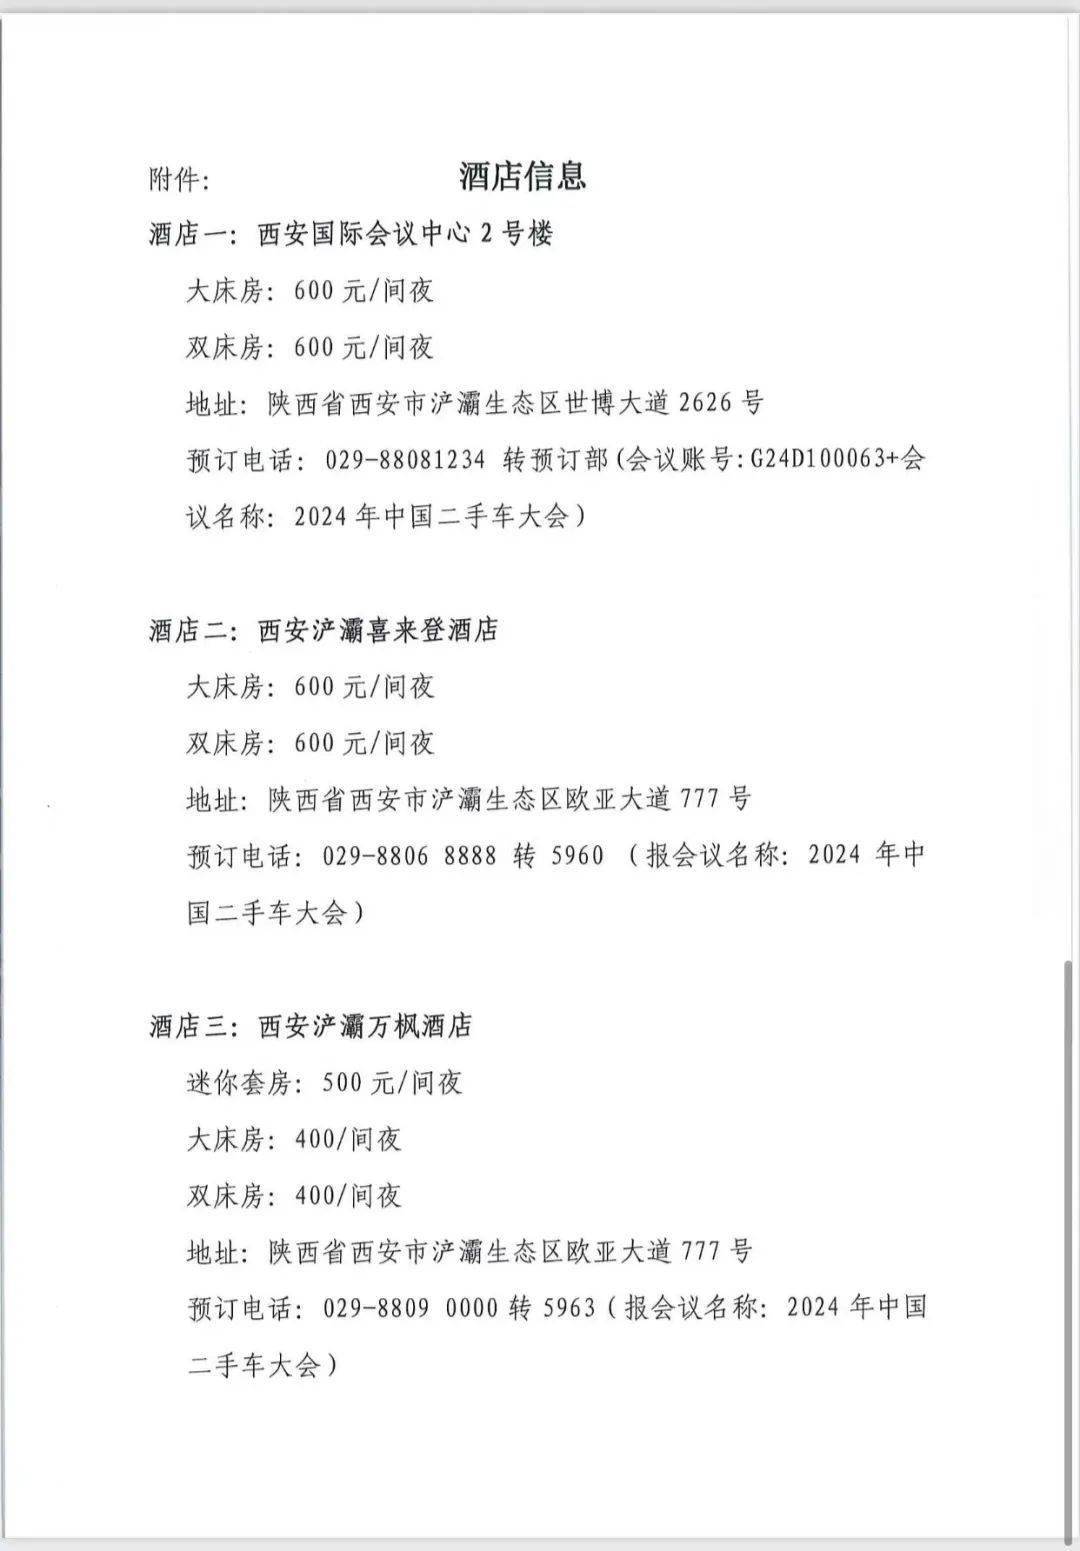 腾讯：管家婆澳门资料大全-一件事一次办 | 重庆首家二手车出口企业车驾管社会服务站启用